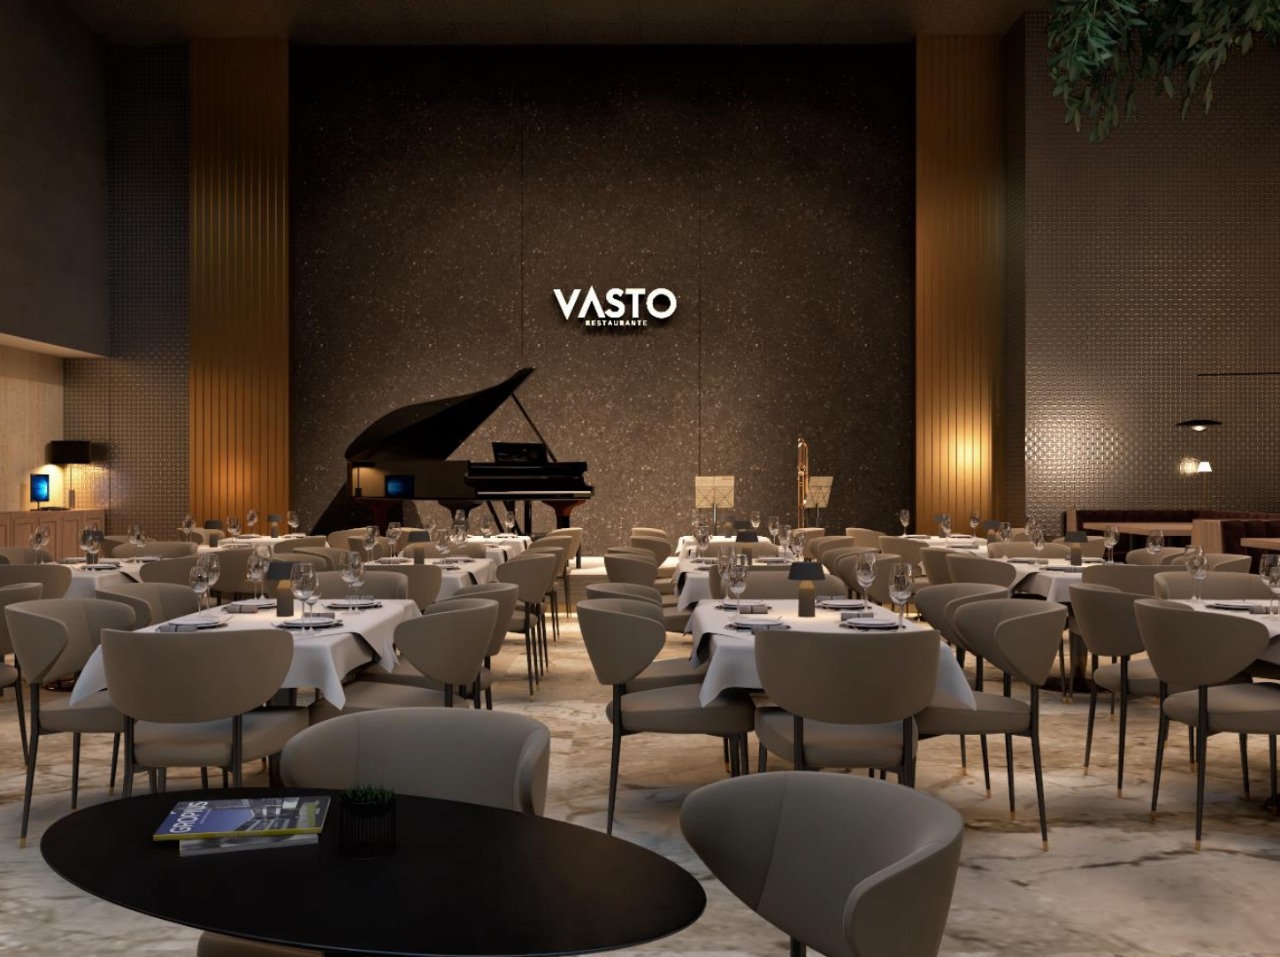 Restaurante Vasto inicia operação em Fortaleza na próxima semana e já registra 600 reservas para os próximos meses